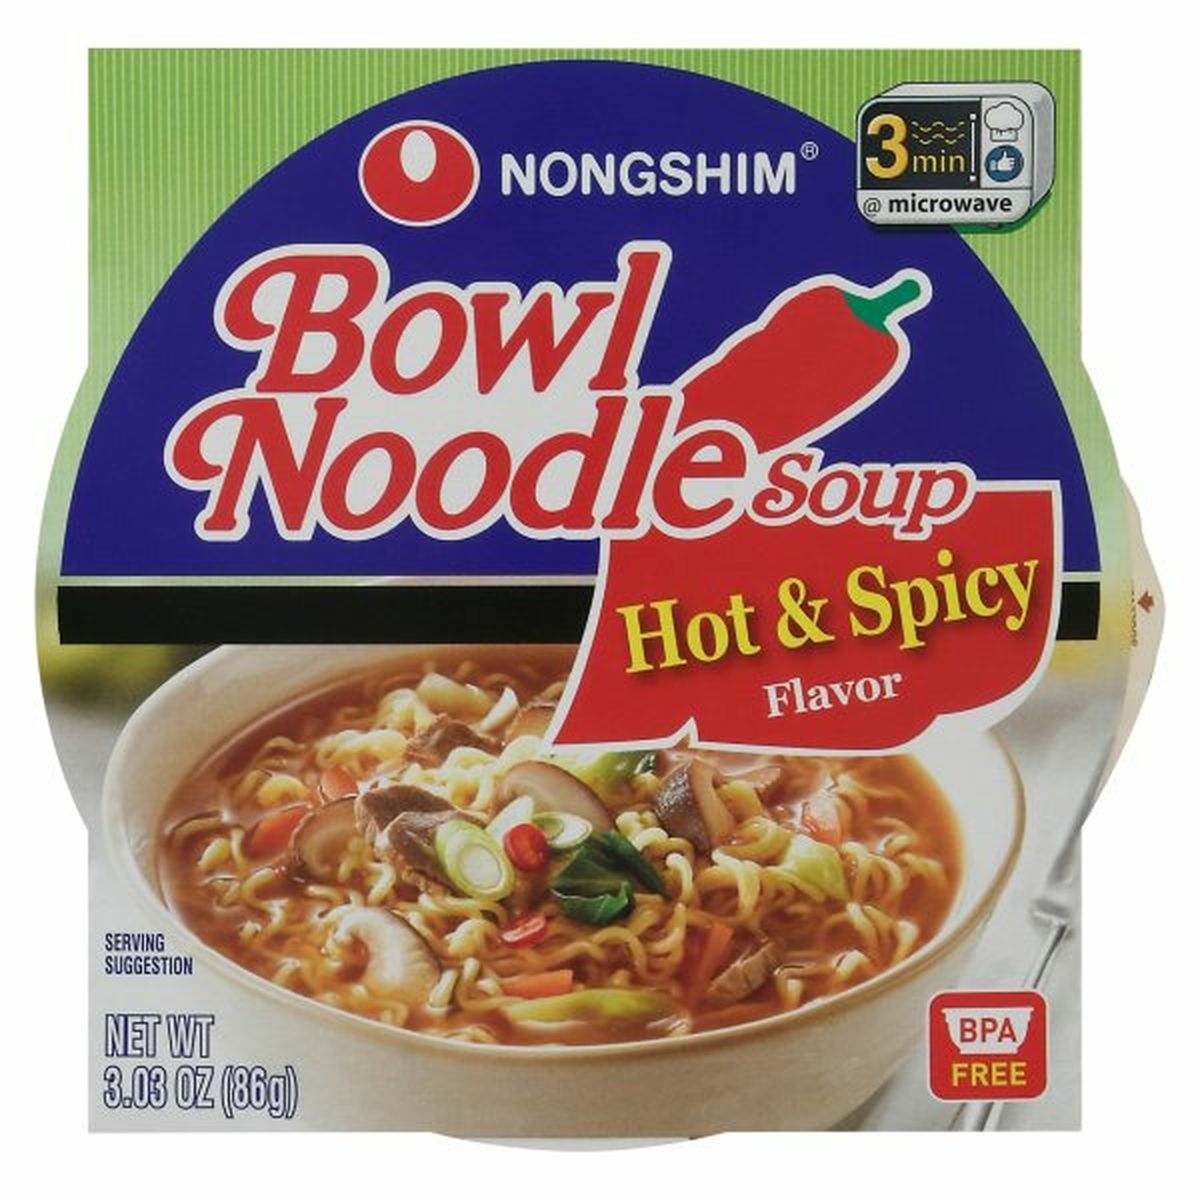 Calories in Nongshim Bowl Noodle Soup, Hot & Spicy Flavor